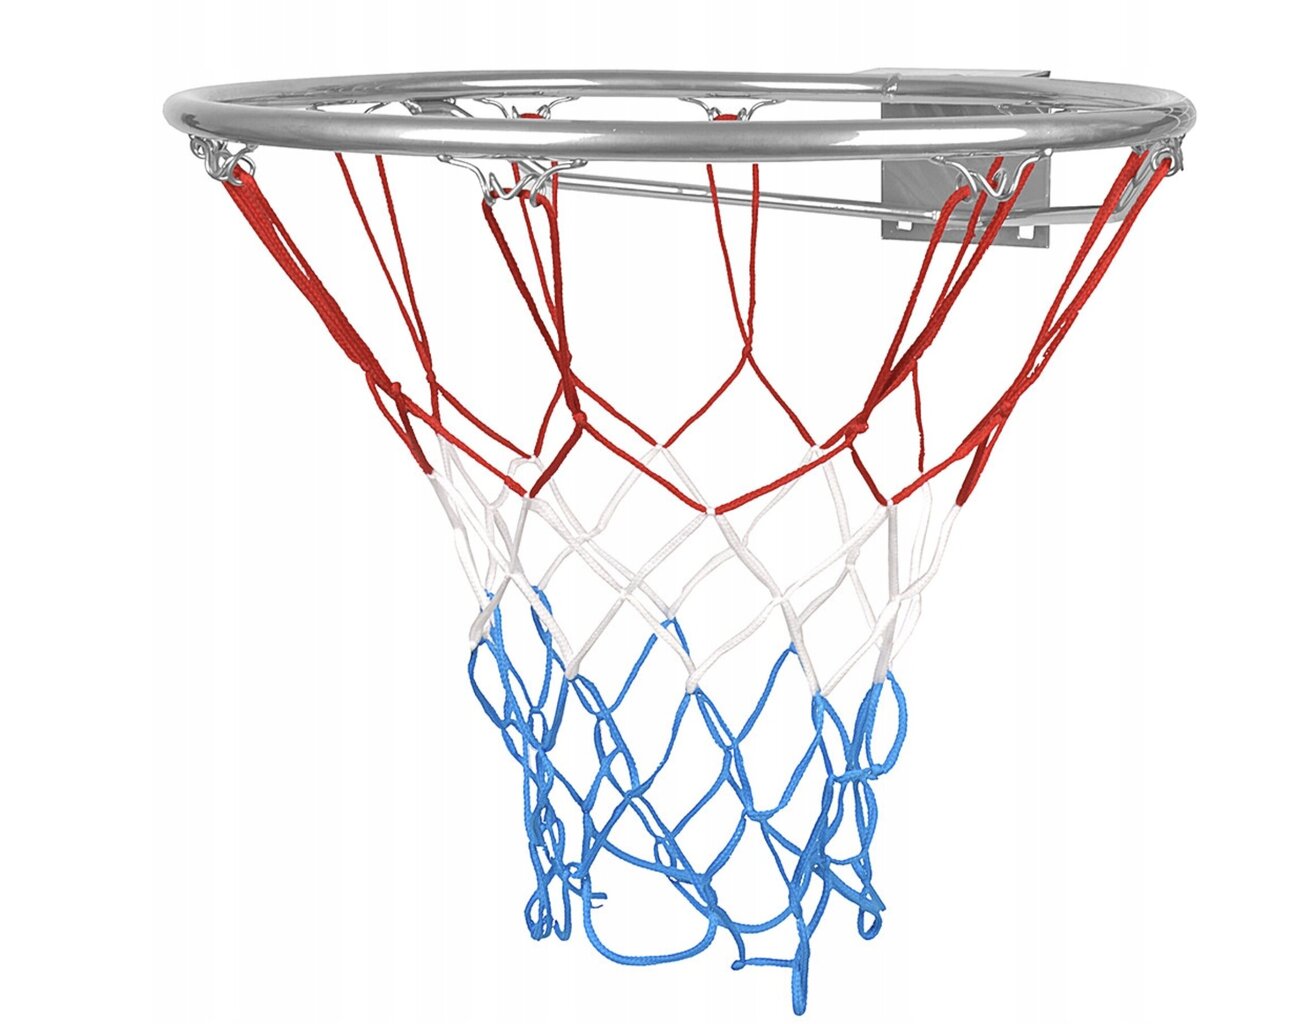 Basketbola stīpa ar tīklu un bumbu Molti, 45 cm cena un informācija | Citi basketbola aksesuāri | 220.lv